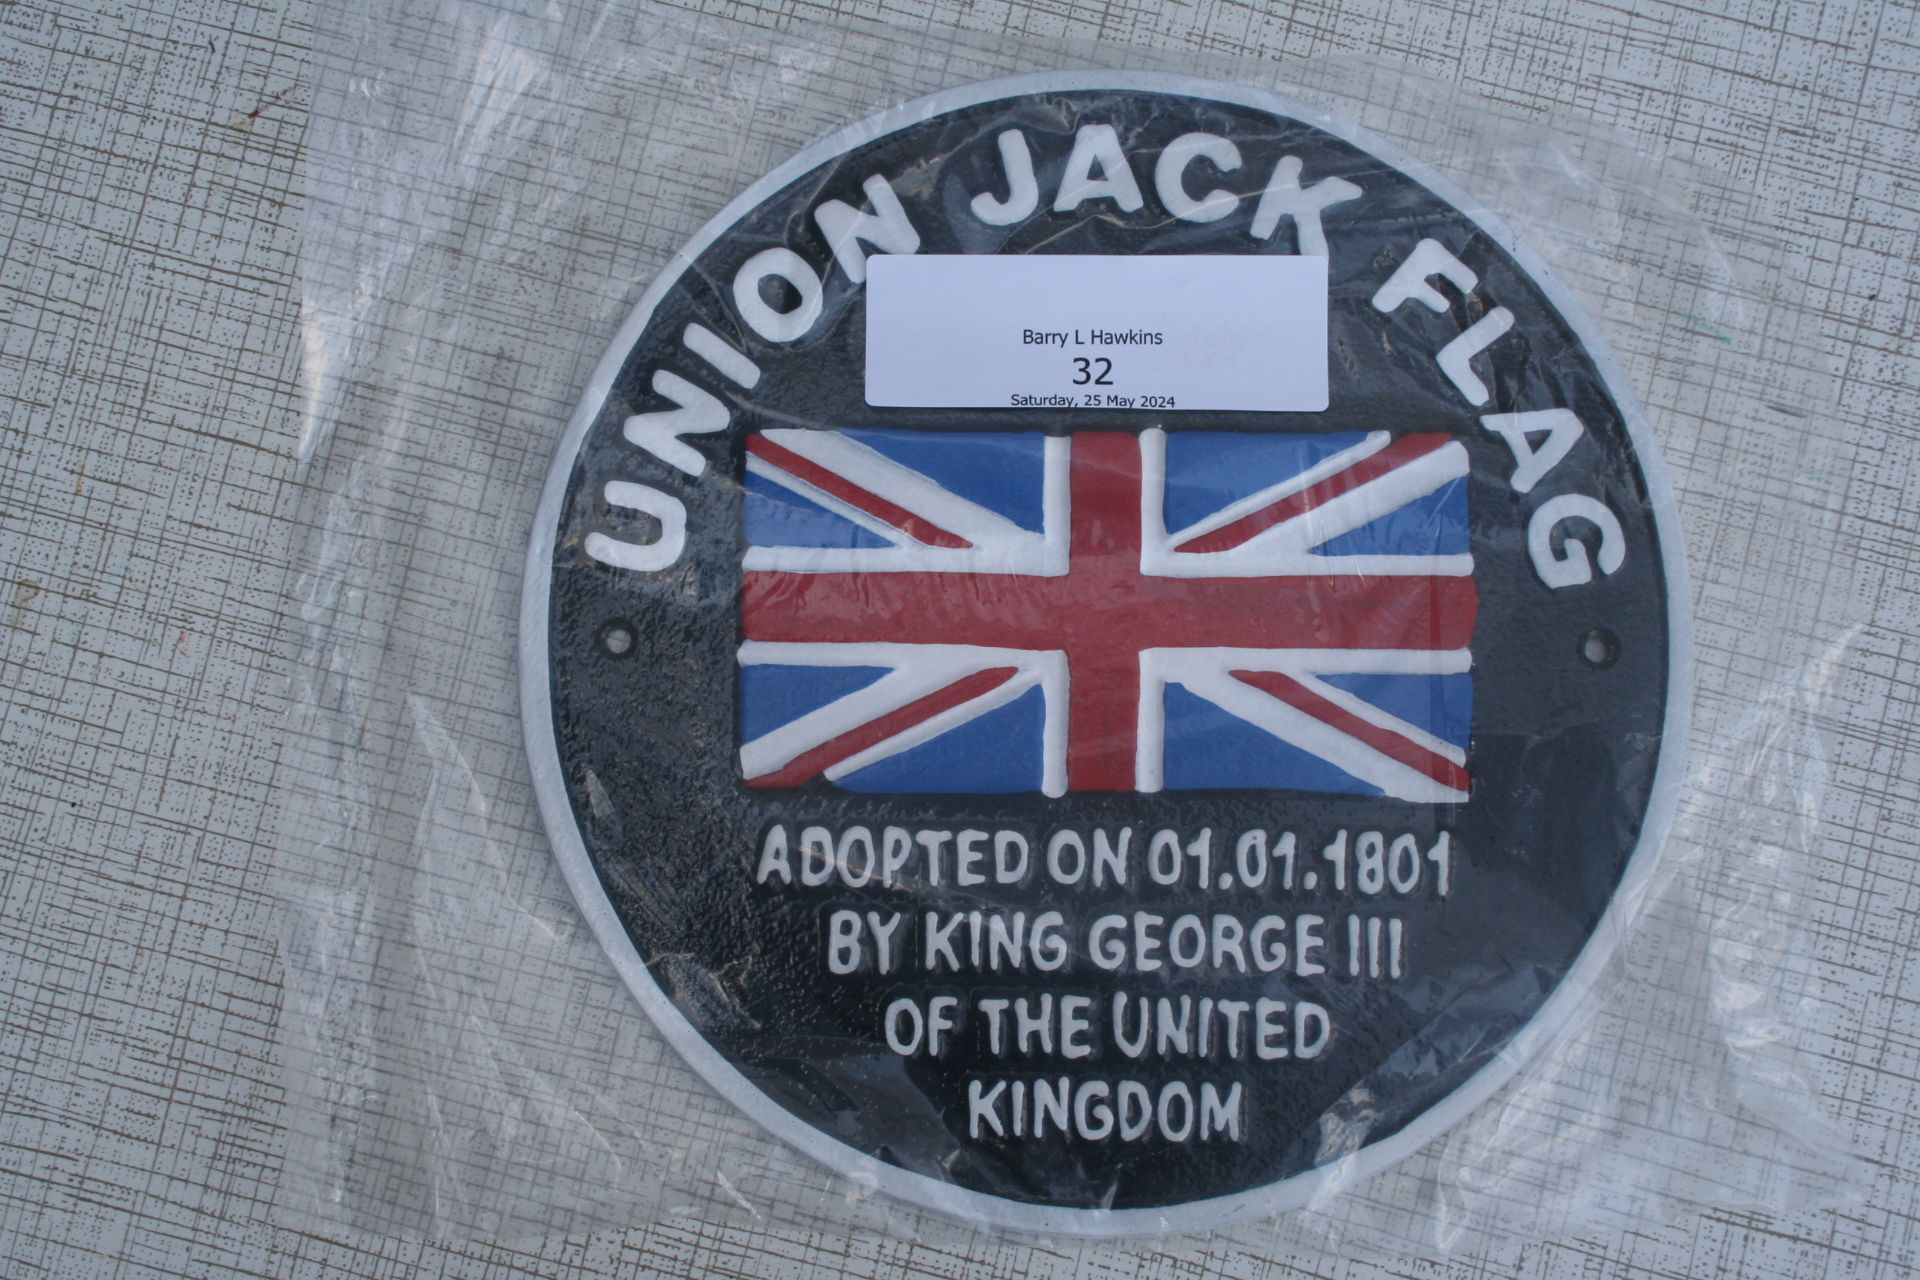 Union Jack plaque